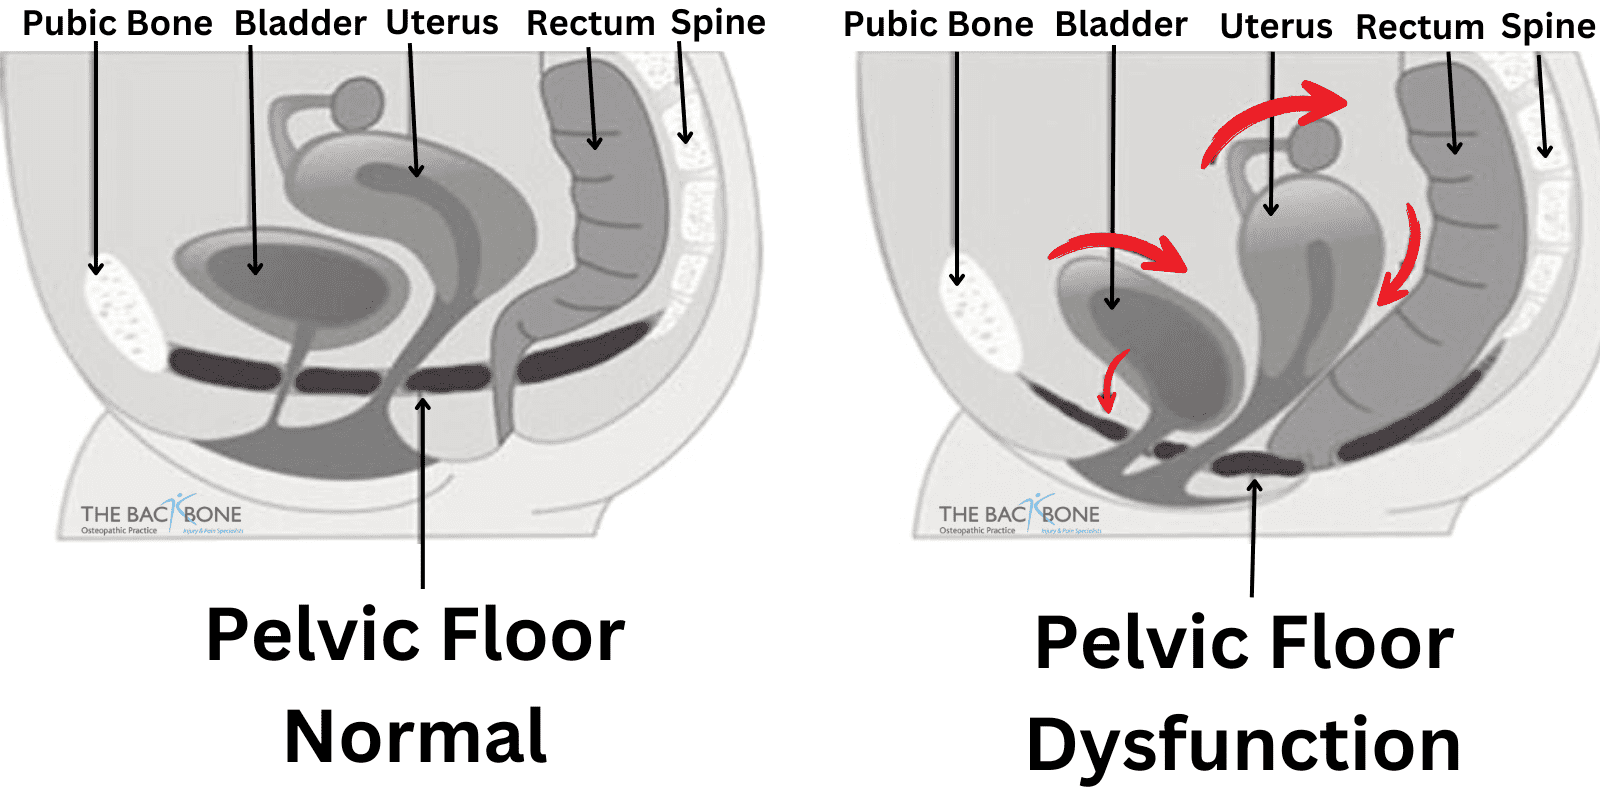 Pelvic floor dysfunction - Wikipedia